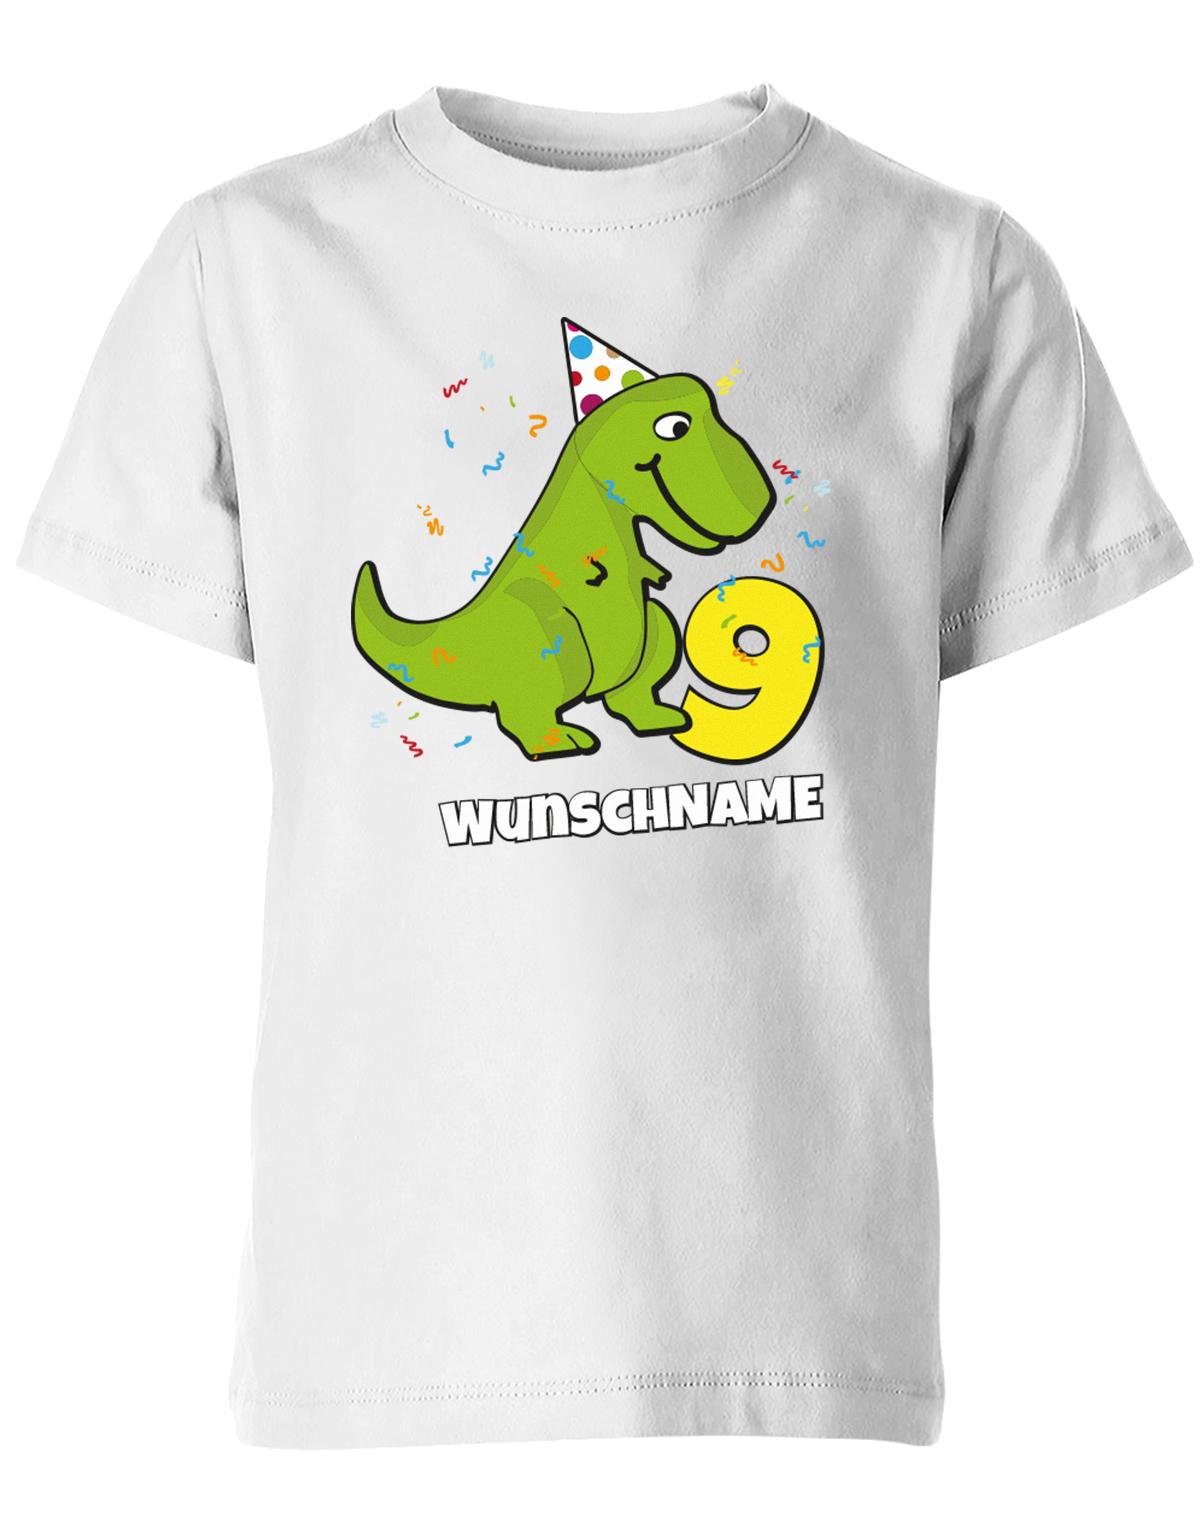 ich-bin-9-Dinosaurier-t-rex-wunschname-geburtstag-kinder-shirt-weiss